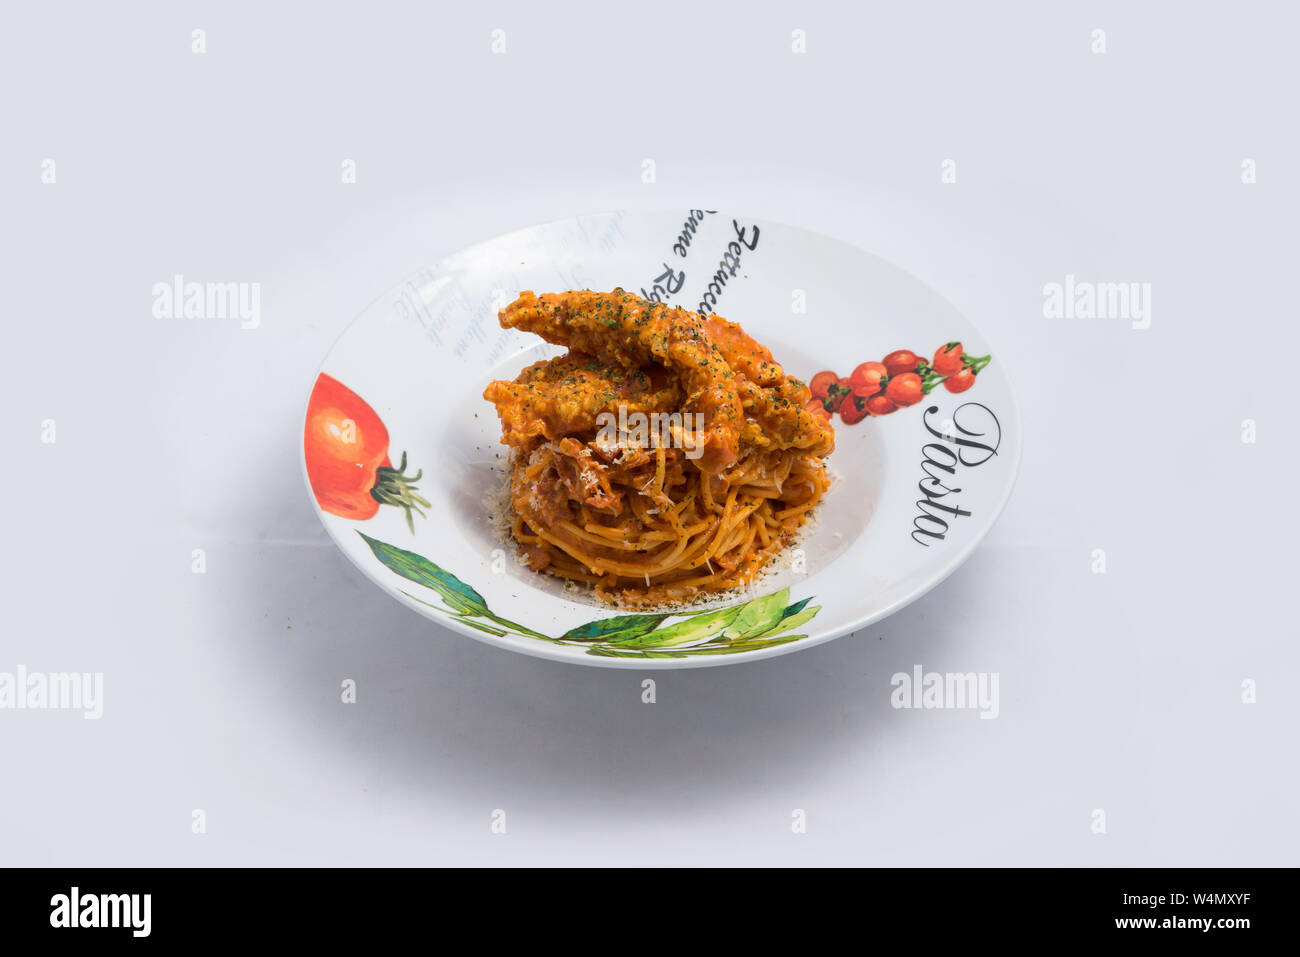 Einen niedrigen Kontrast hero Schuß vom Huhn mit Nudeln Nudeln in eine Platte curry mit minimalen weißen Hintergrund mit 60 Grad von vorne Perspektive Stockfoto